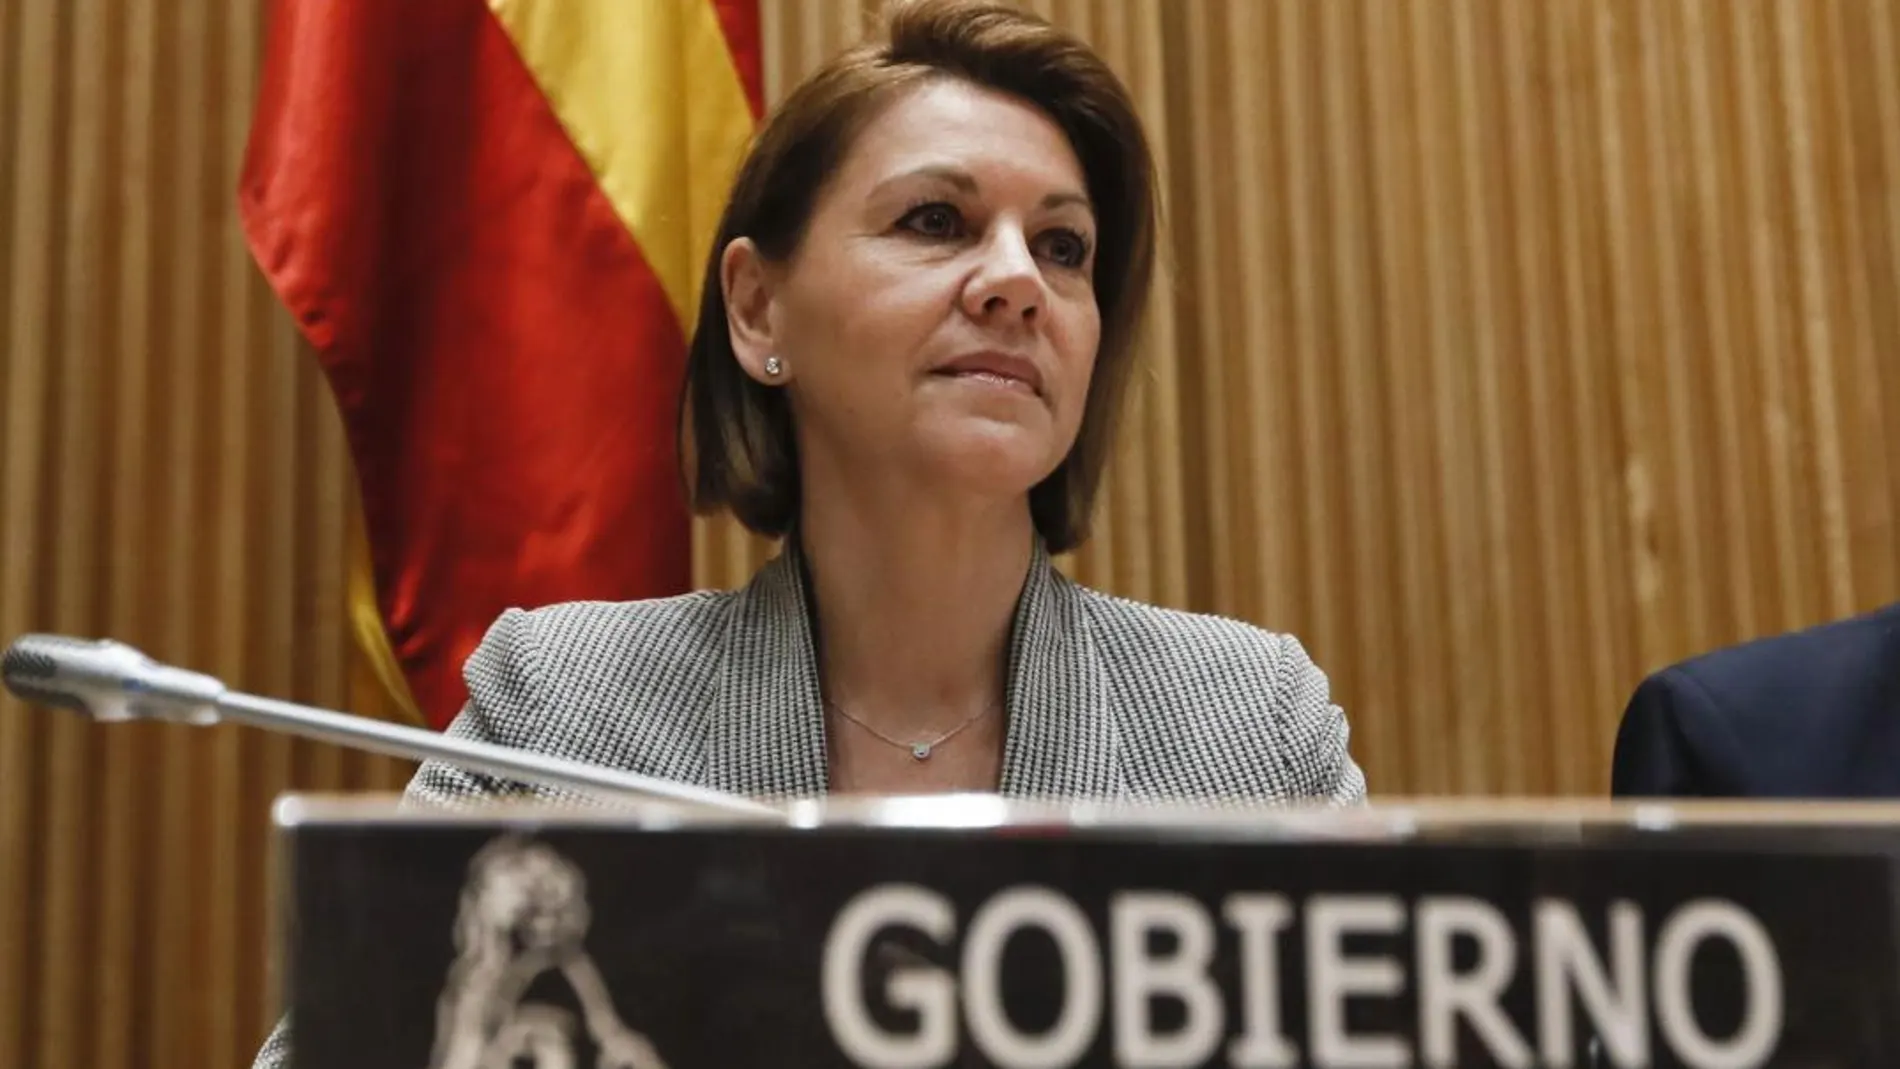 La ministra de Defensa, María Dolores de Cospedal, durante su comparecencia hoy en la comisión de Defensa del Congreso